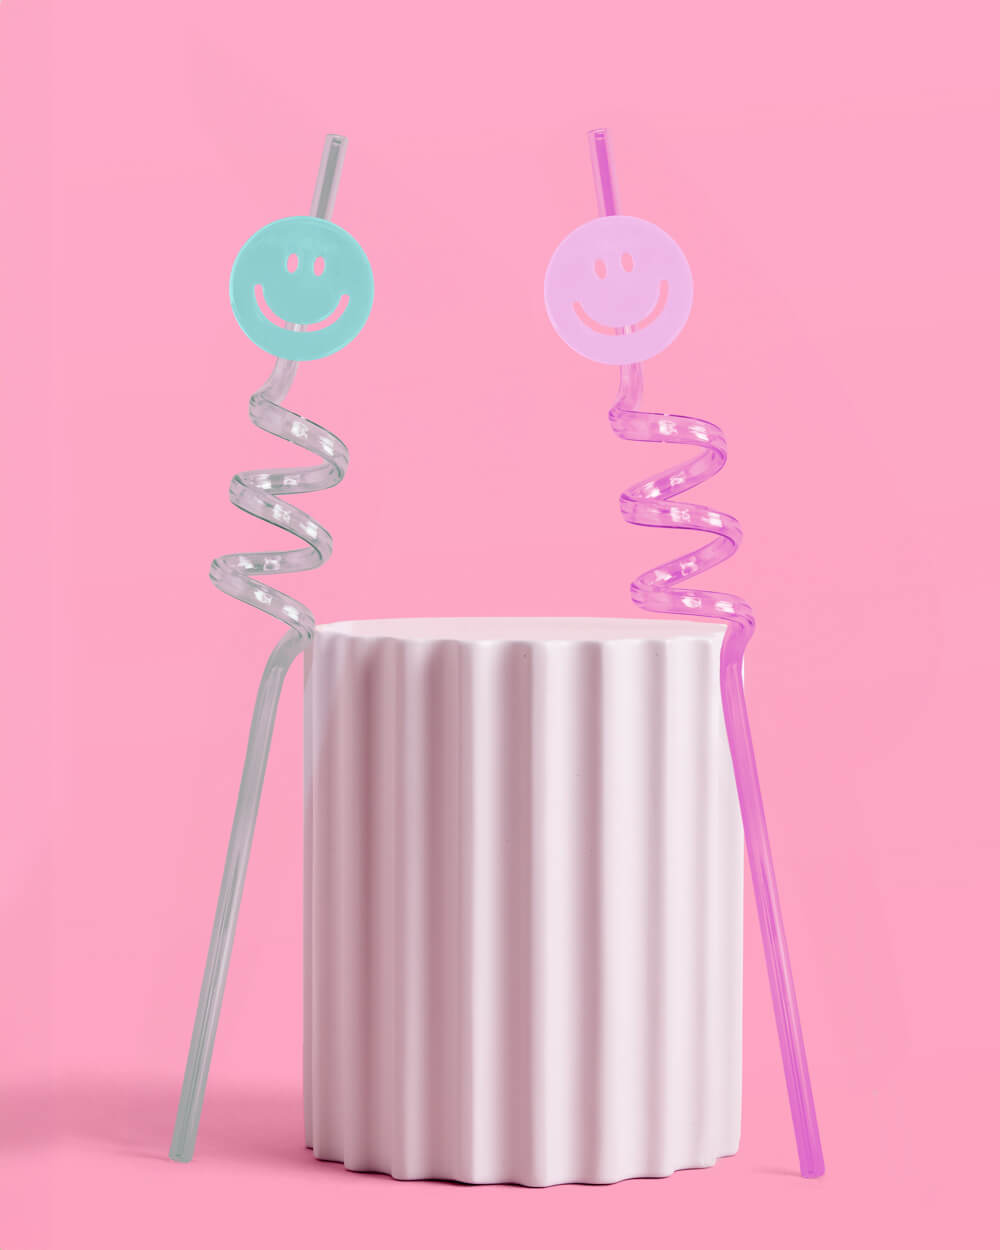 Smiley Straws - 16 reusable straws